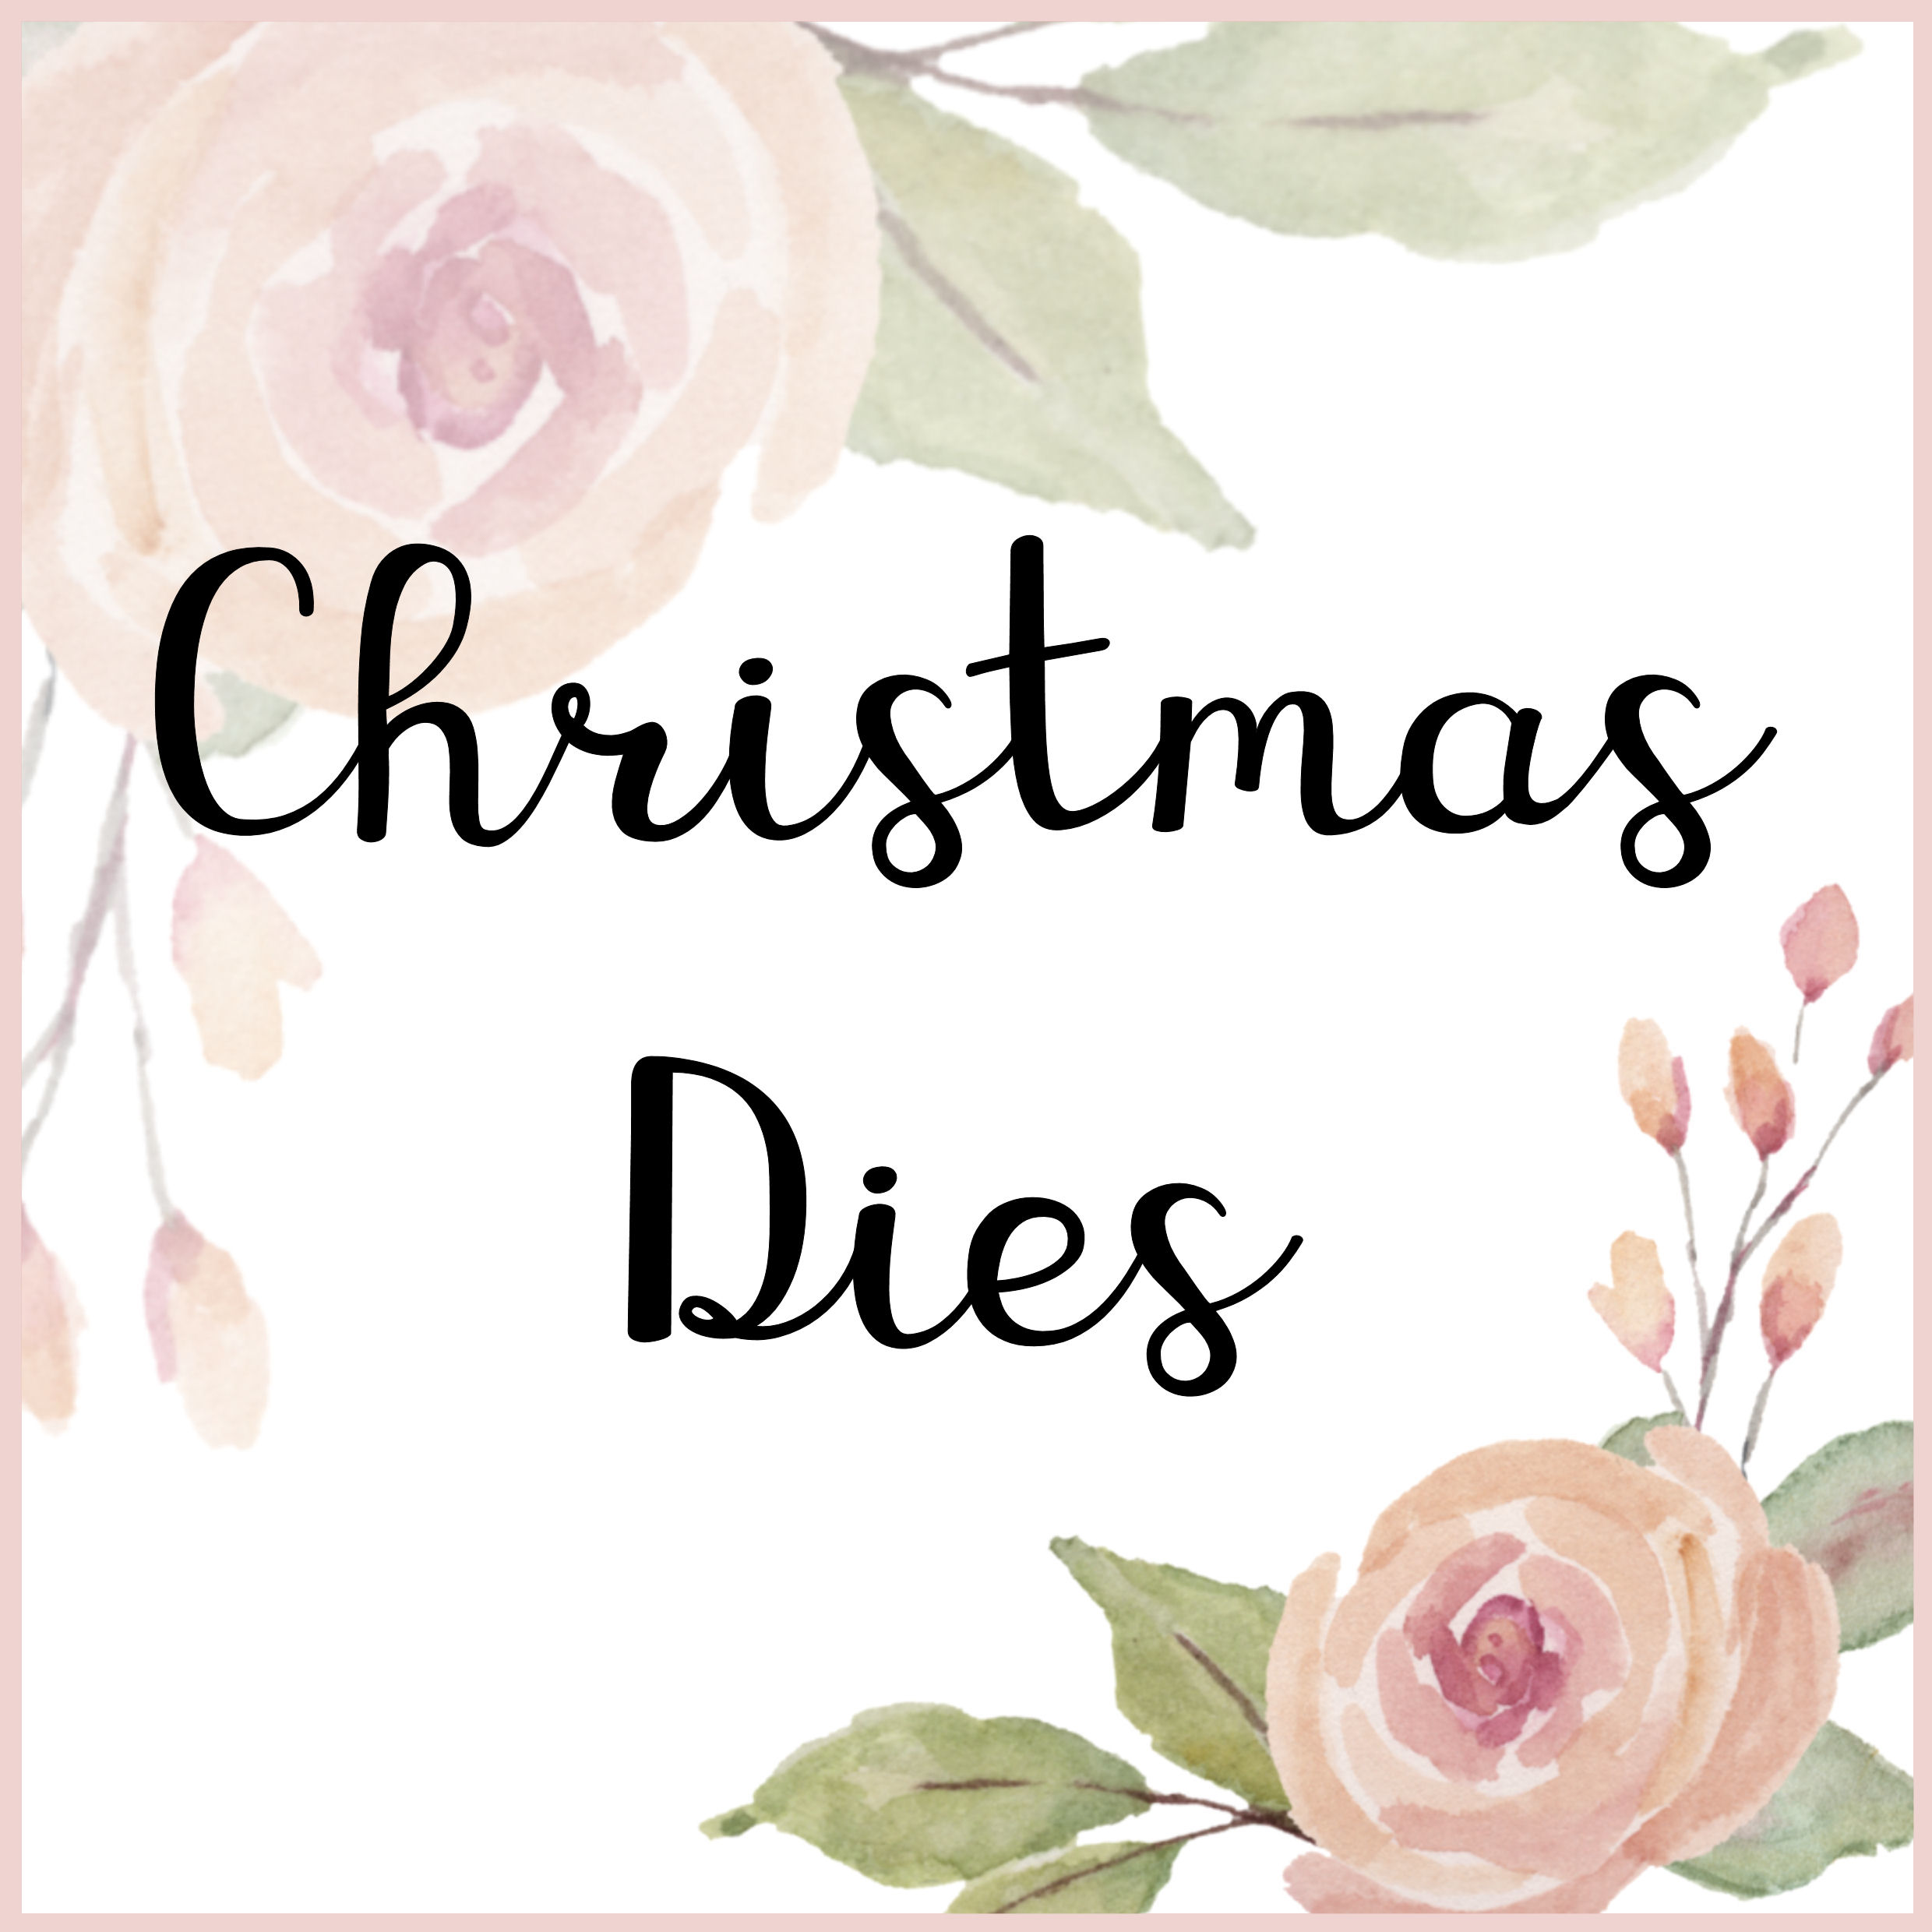 Christmas Dies